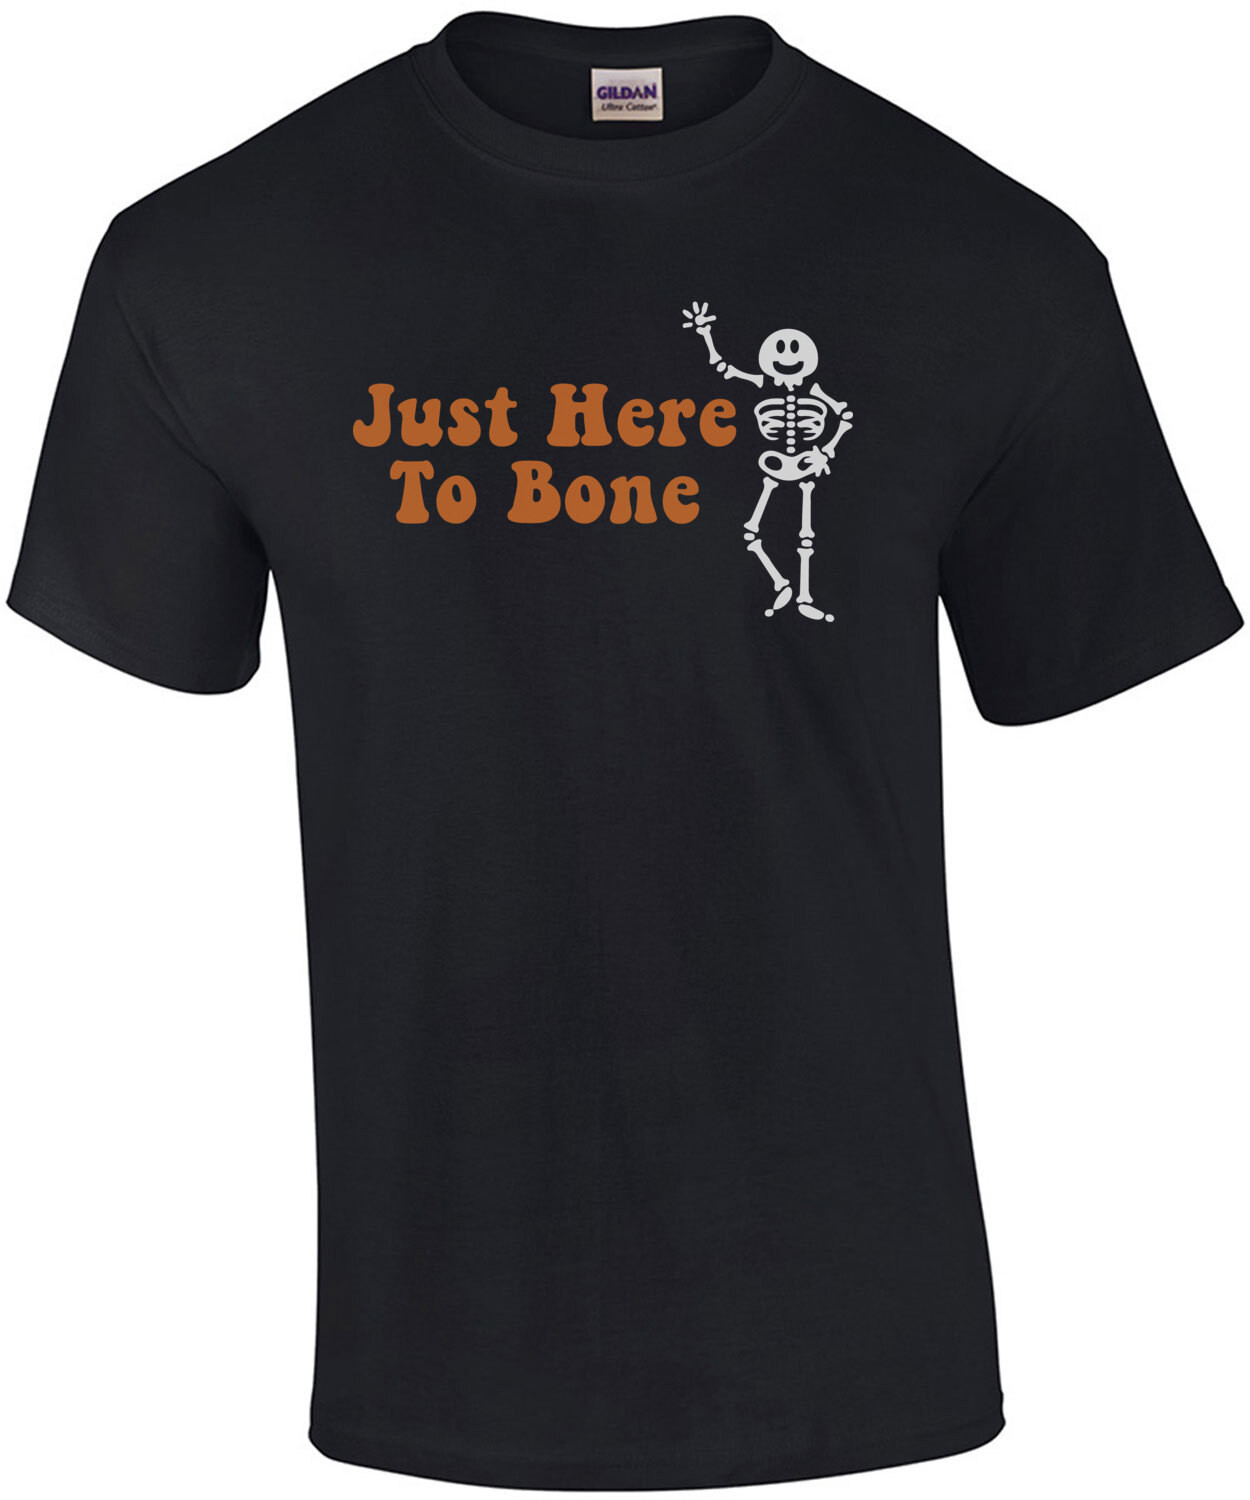 Just here to bone - halloween t-shirt